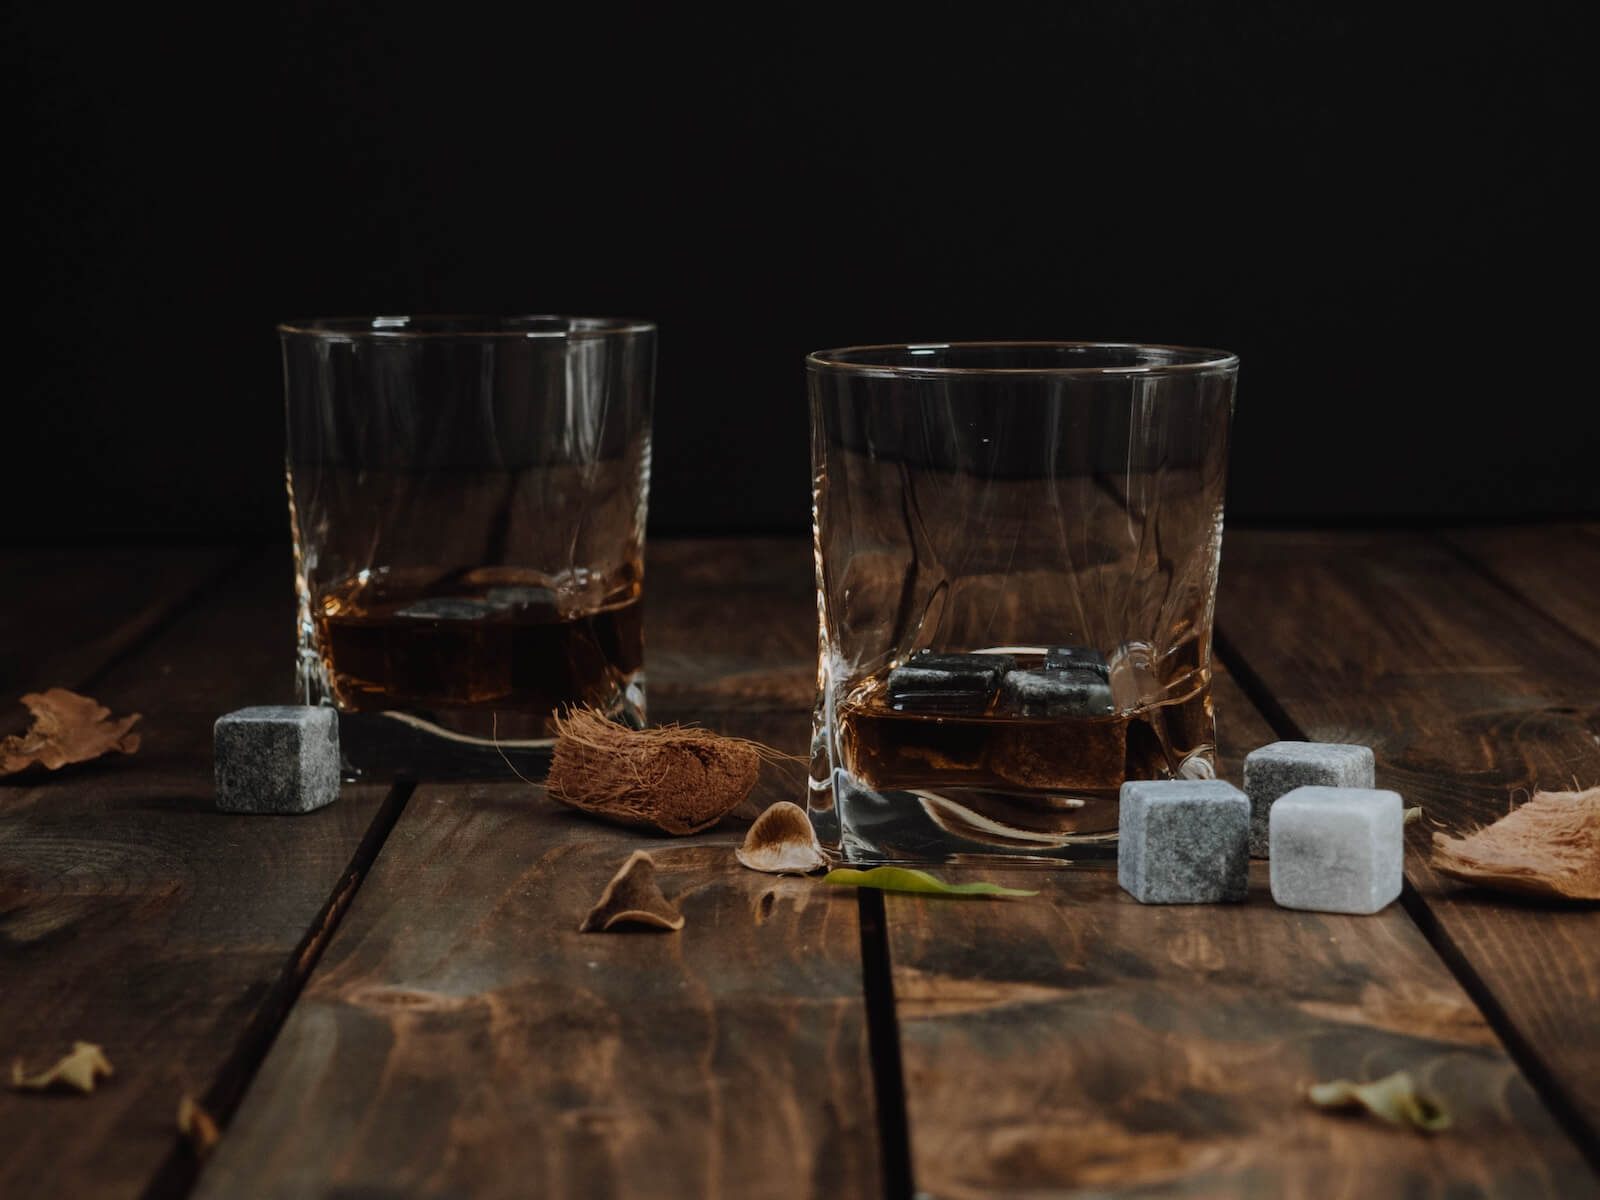 Bourbon served neat in whiskey glasses photo by Anastasia Zhenina on Unsplash